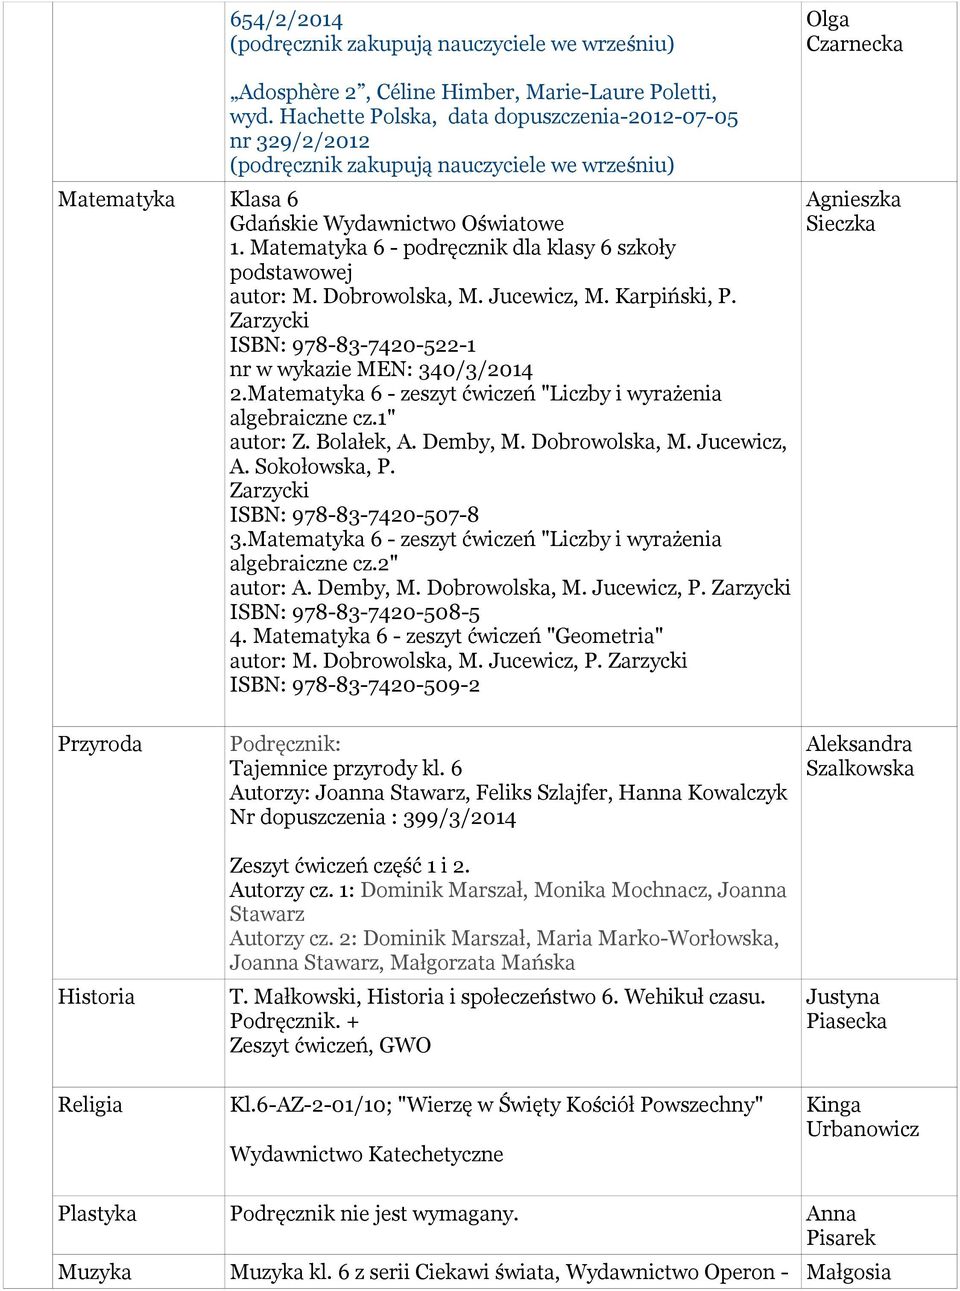 Matematyka 6 - zeszyt ćwiczeń "Liczby i wyrażenia algebraiczne cz.1" autor: Z. Bolałek, A. Demby, M. Dobrowolska, M. Jucewicz, A. Sokołowska, P. Zarzycki ISBN: 978-83-7420-507-8 3.